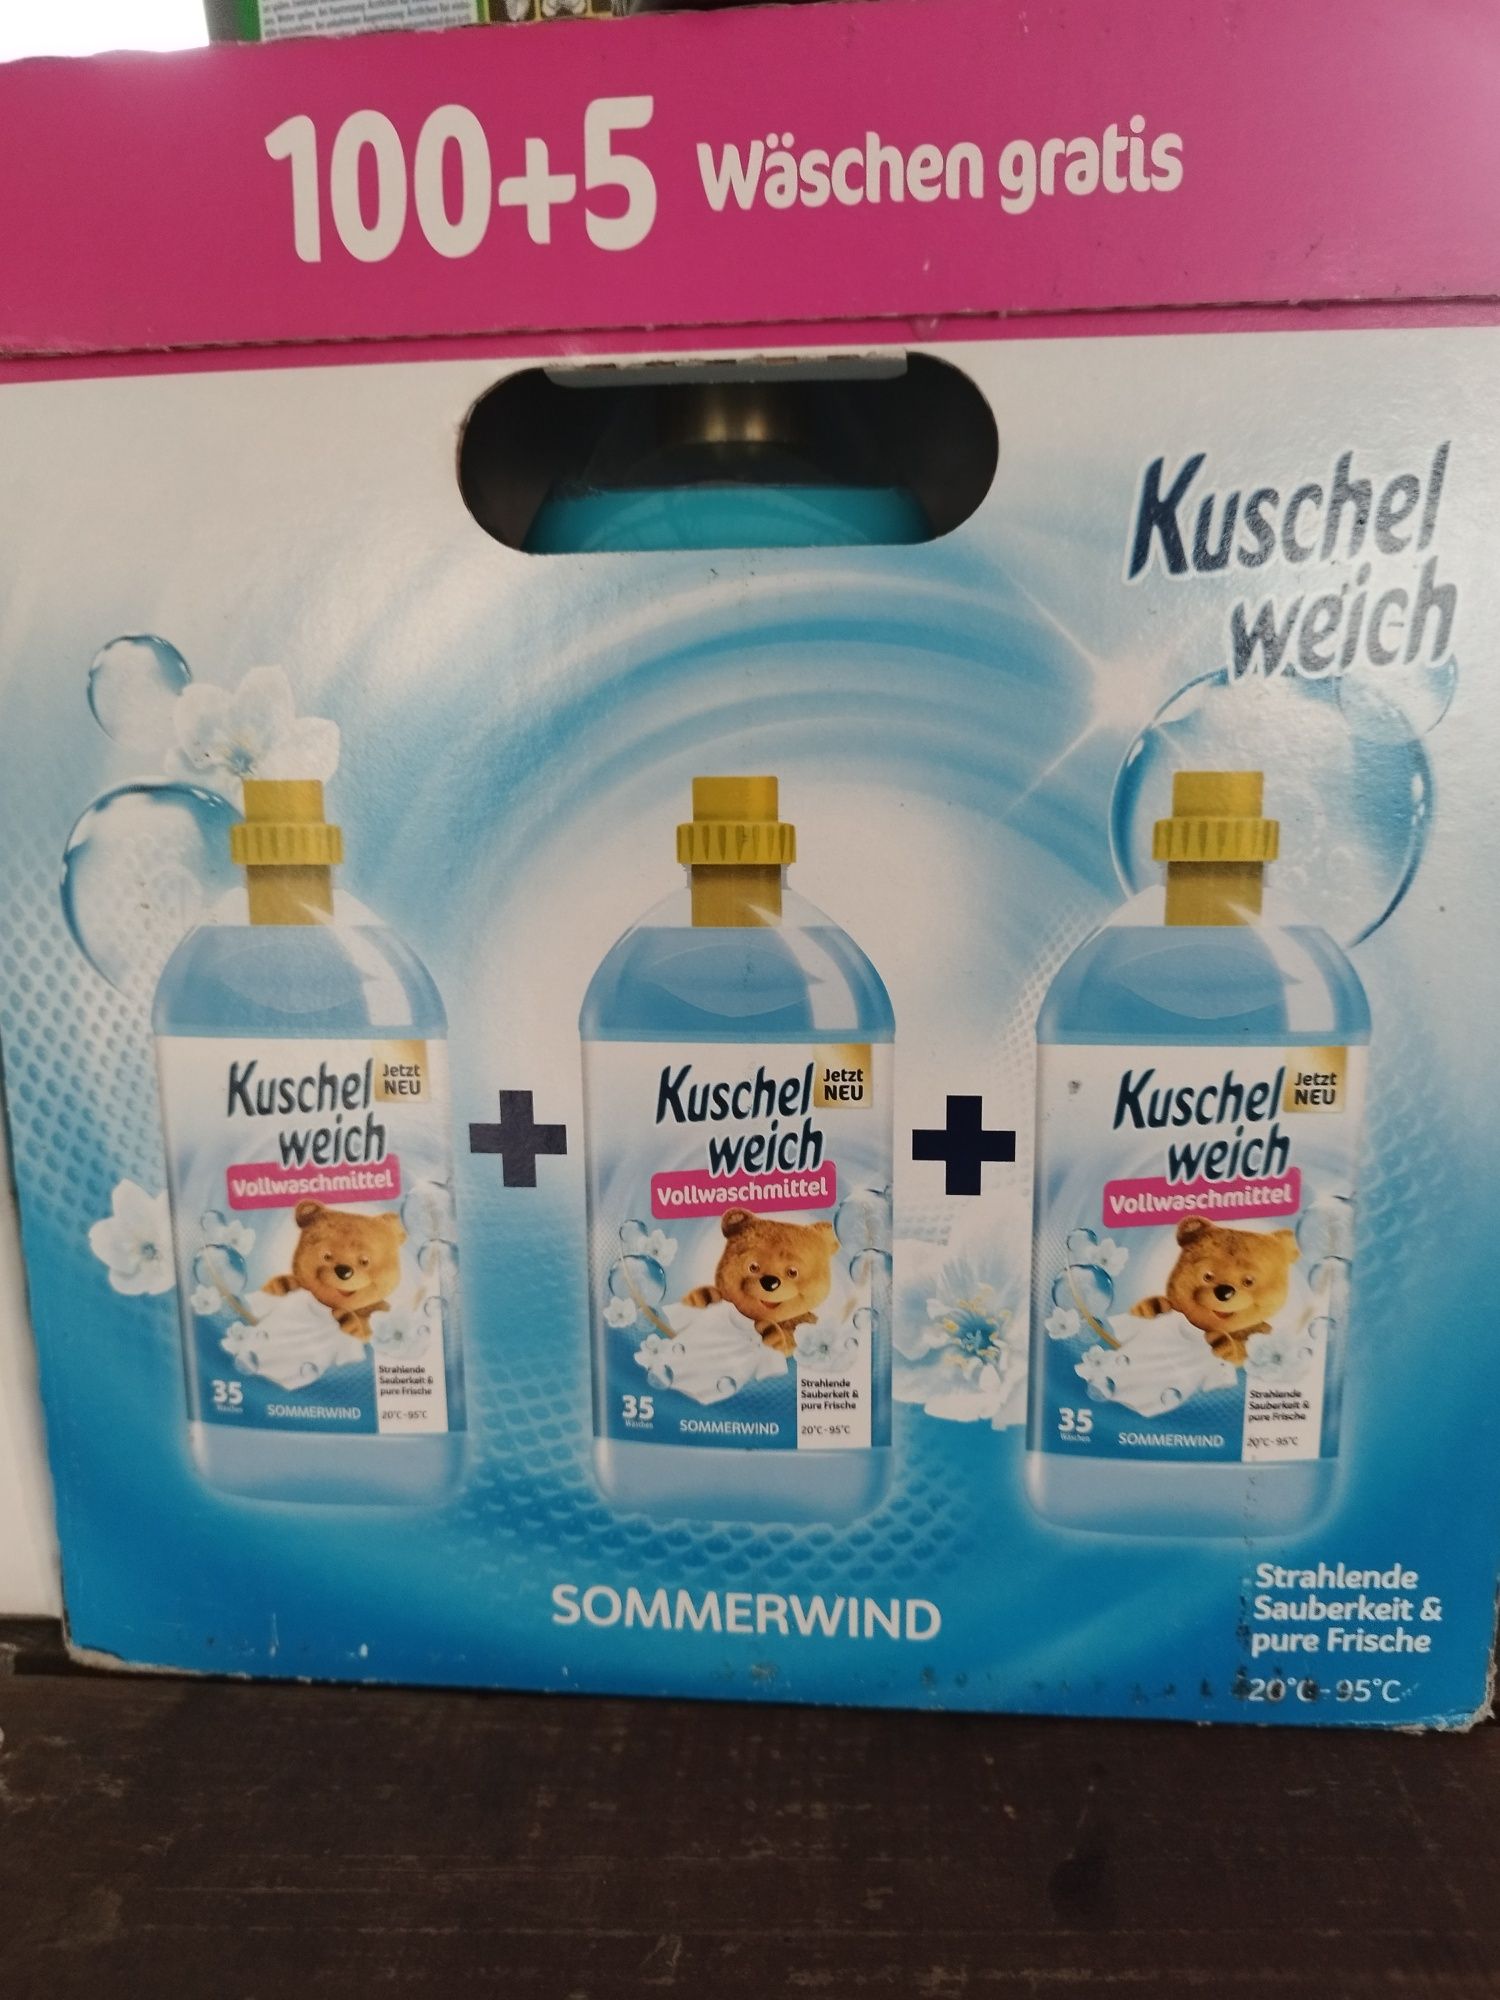 Kuschelweich płyn do prania białego 105 prań DE